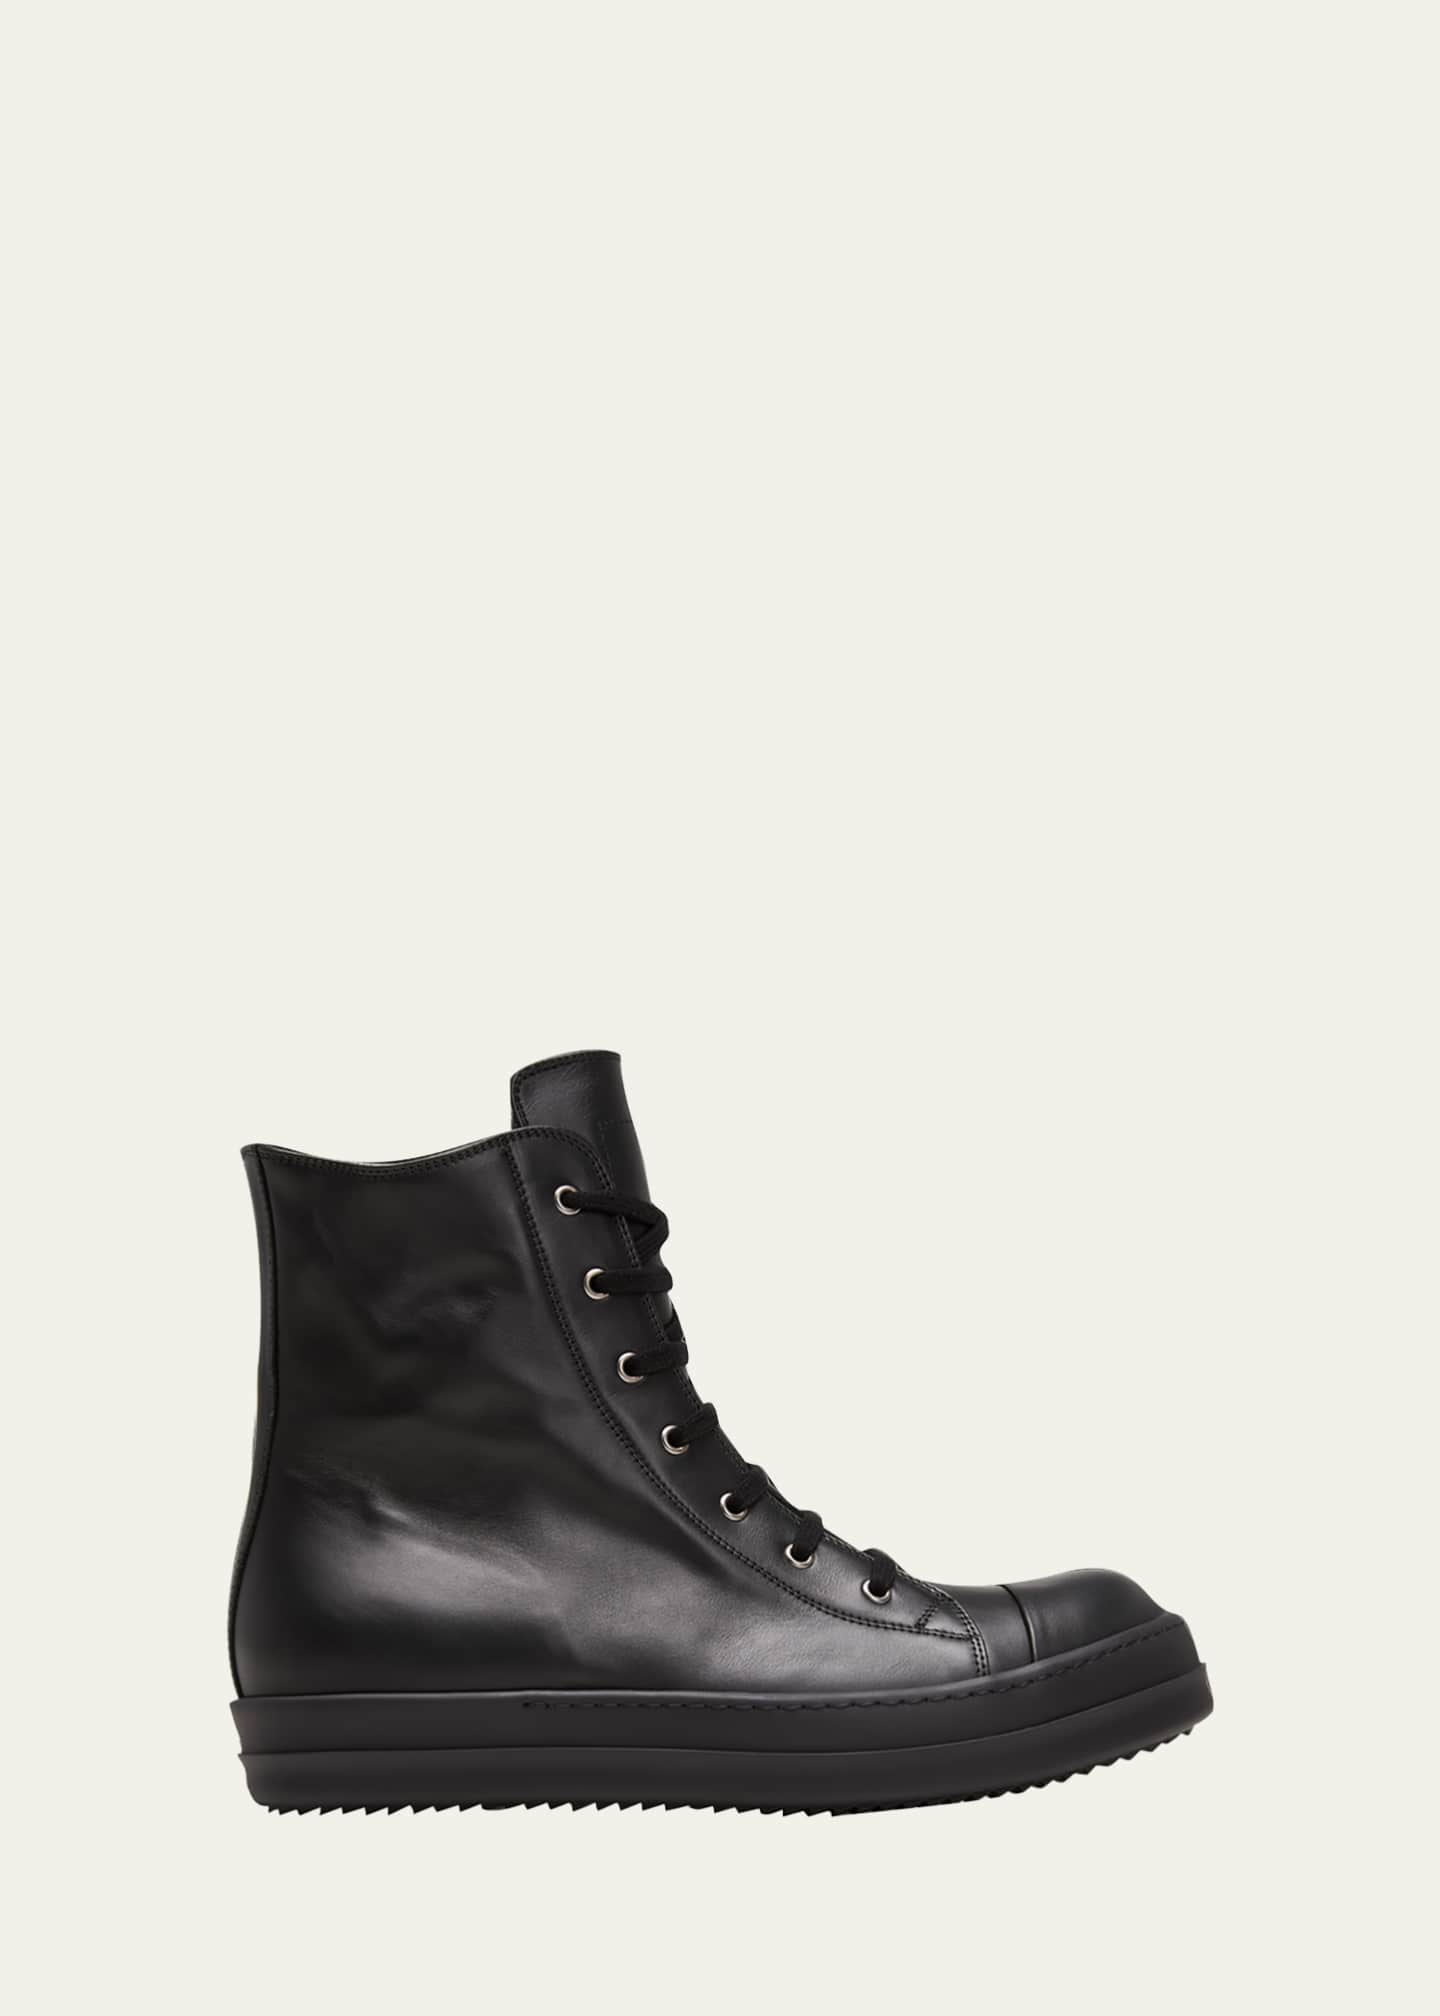 Rick Owens Men's Leather Zip High-Top Sneakers - Bergdorf Goodman